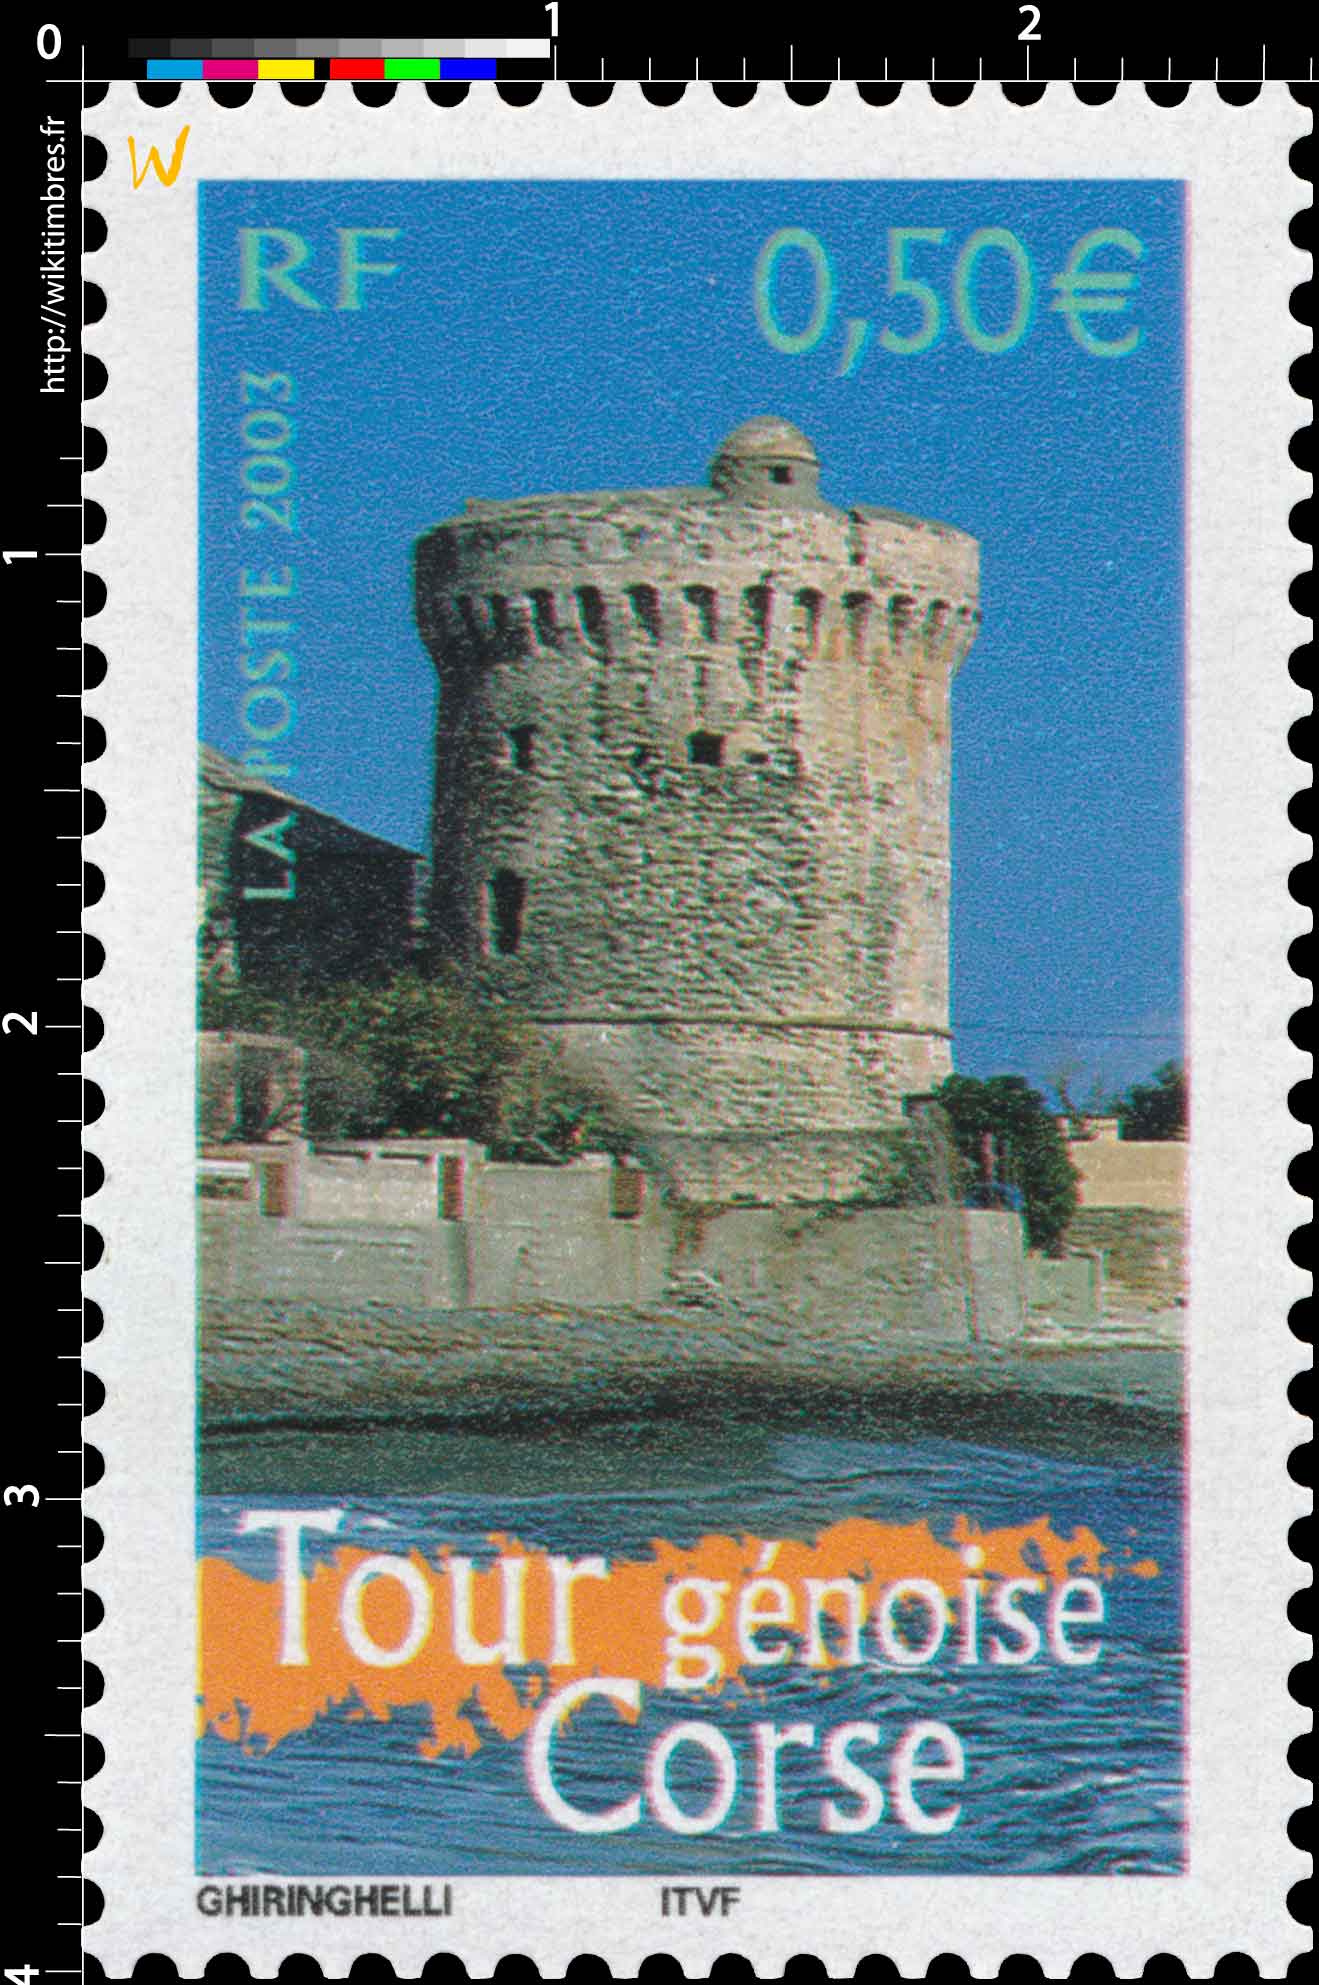 2003 Tour génoise Corse